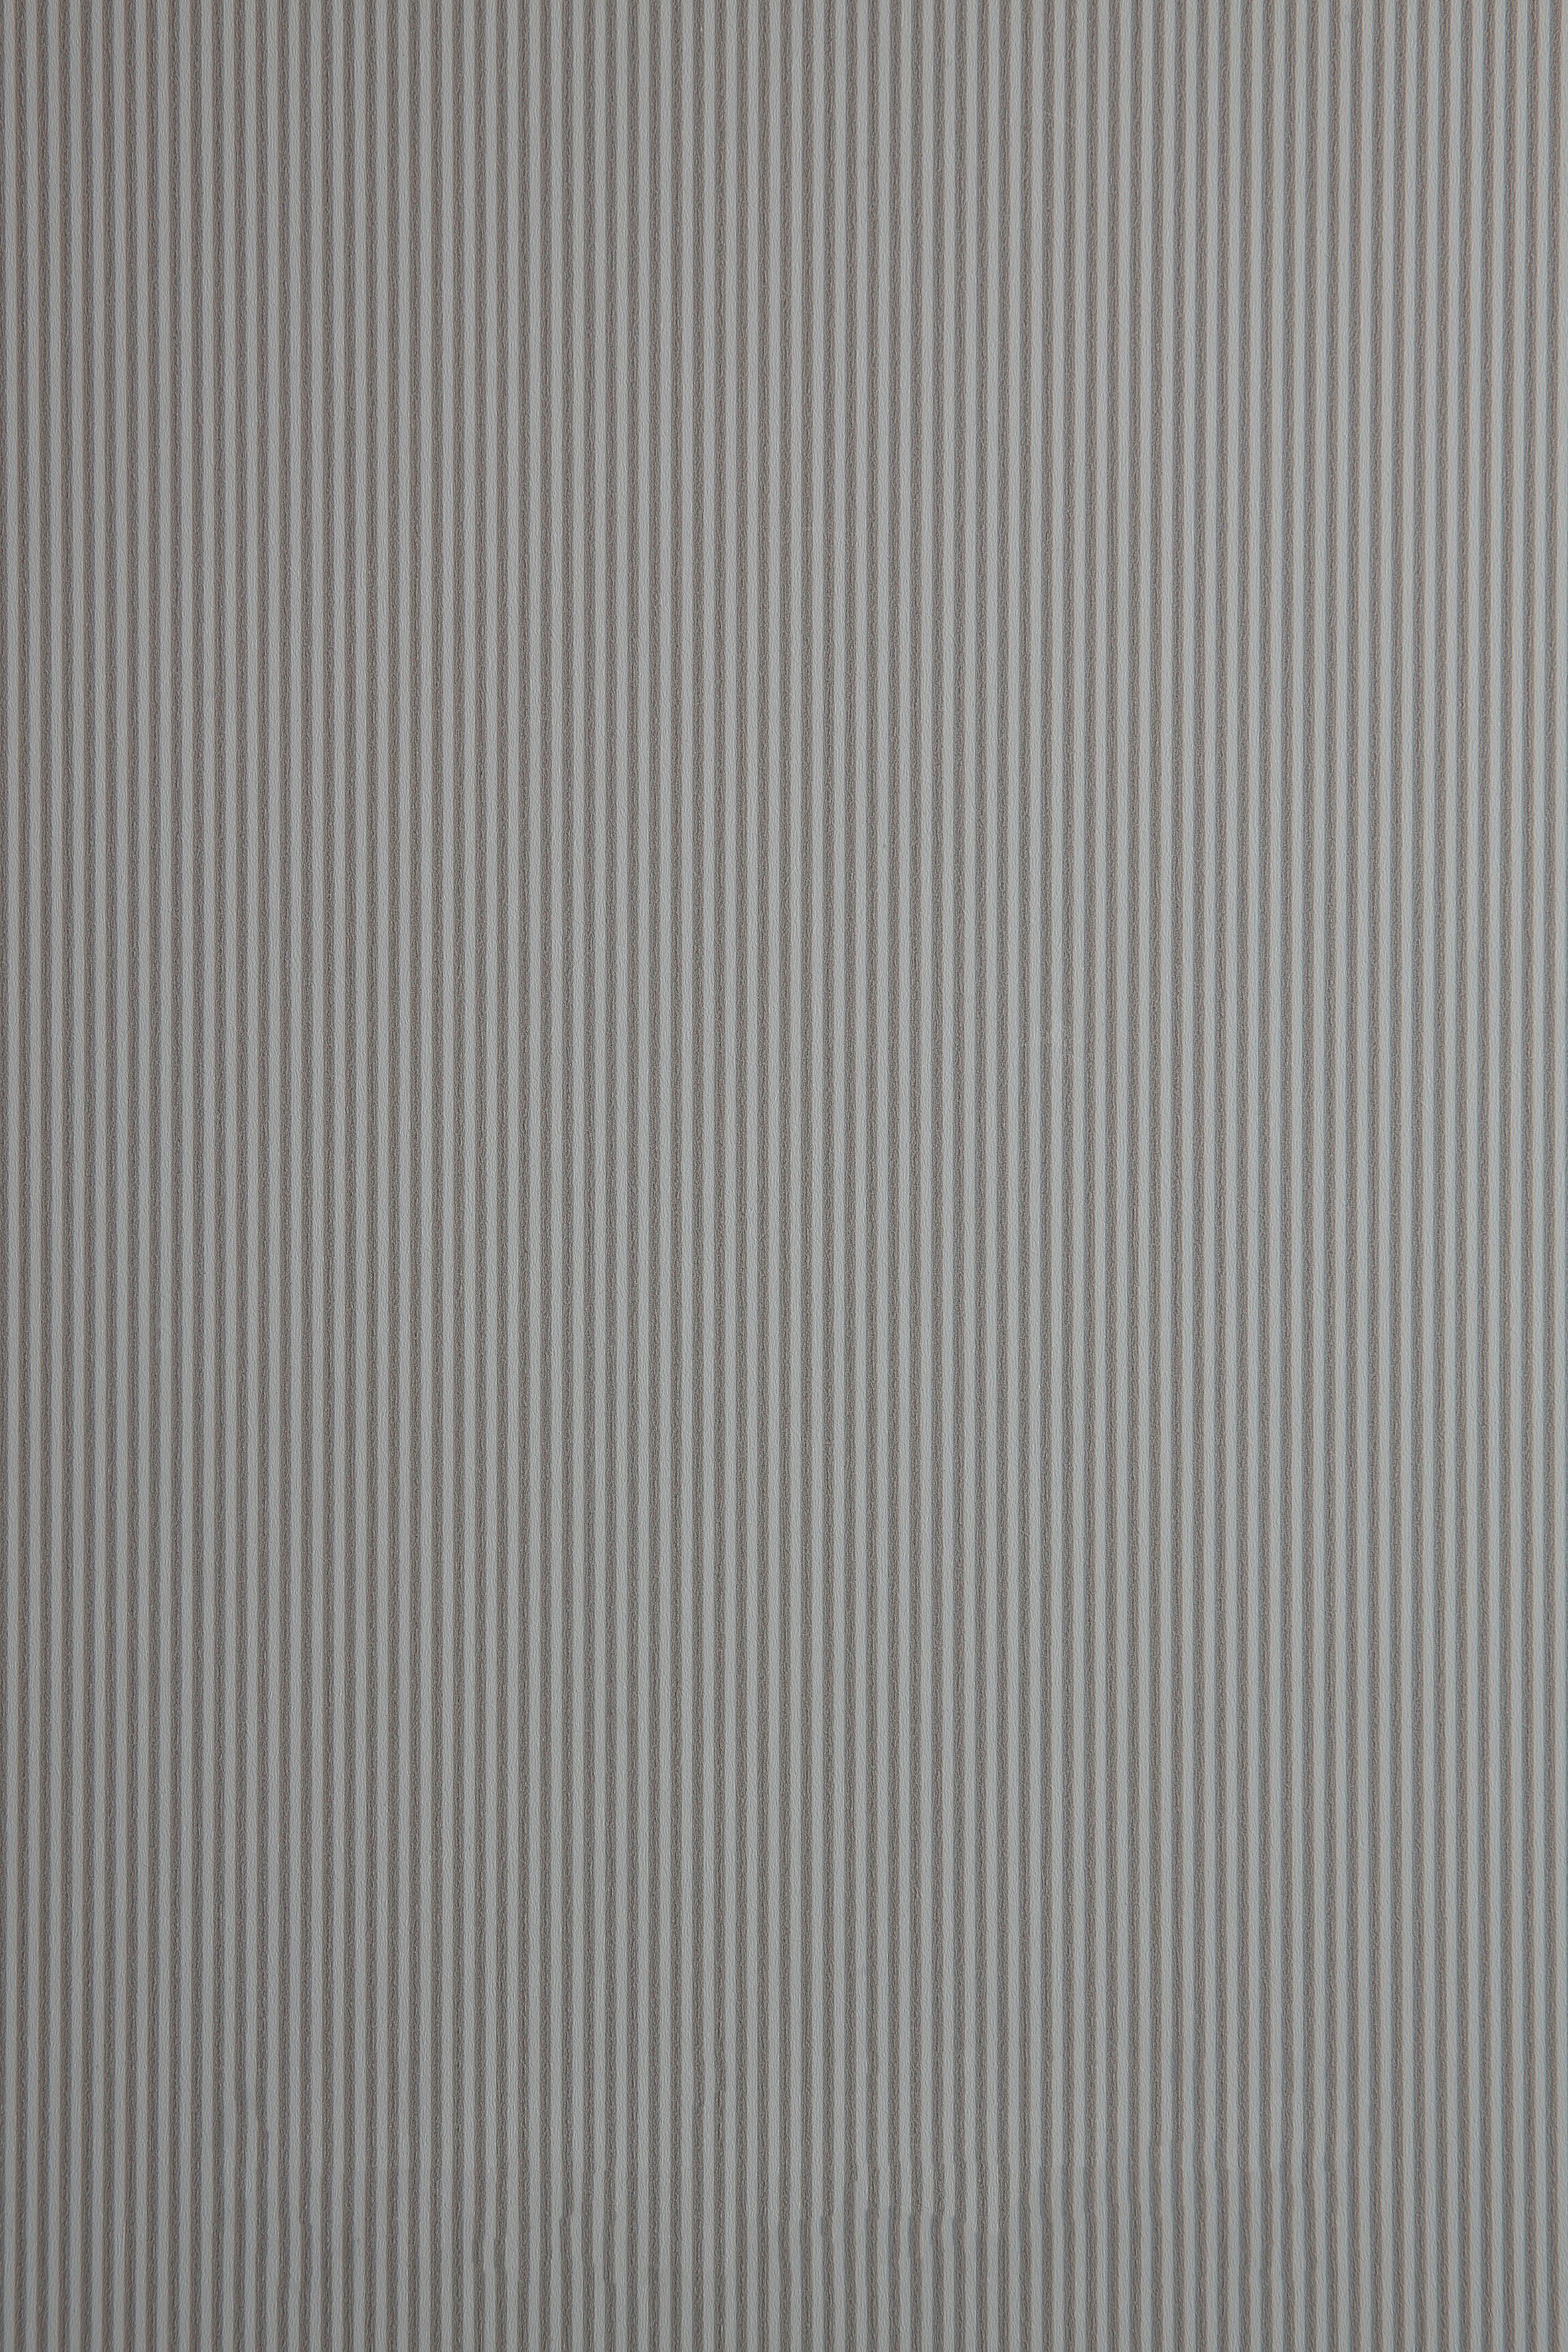 WIEMANN Kleiderschrank Metz Chrom Weiß/Bianco-Eiche-Nachbildung/Griffe: hochwertige Glasfront inkl. Weiß/Glas Schubkästen Holzfarbton im